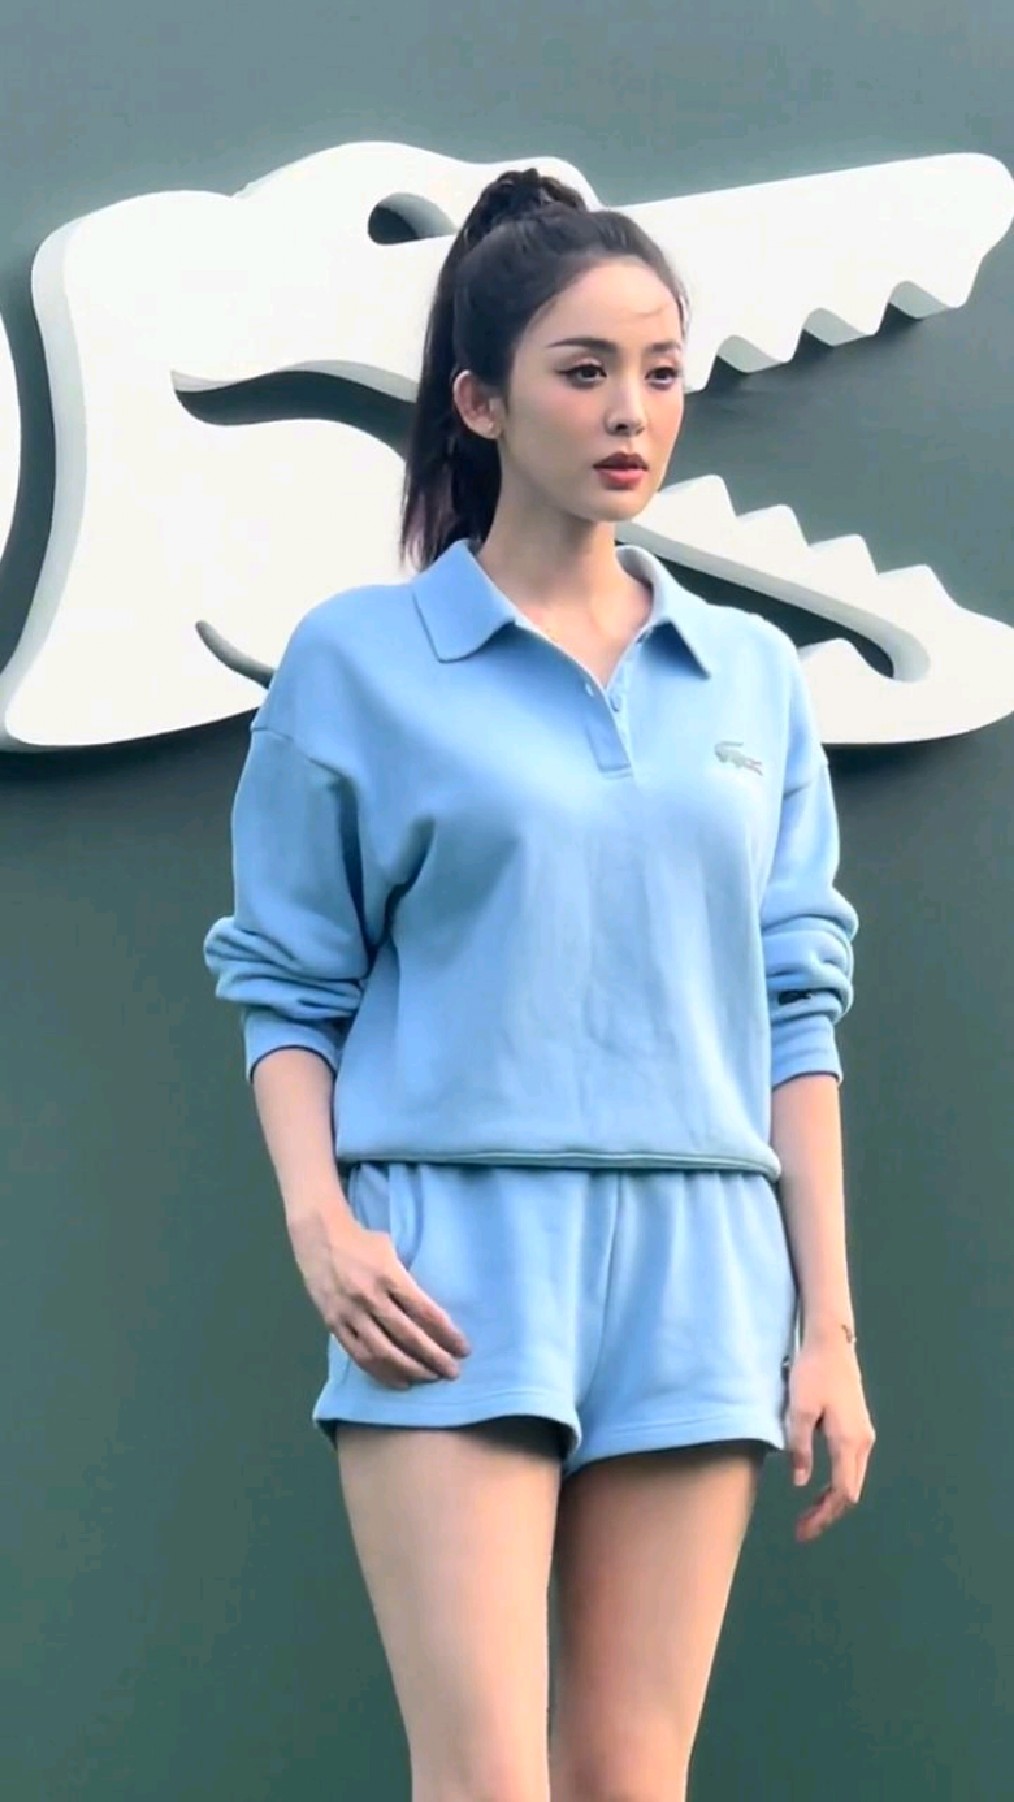 古力娜扎蓝色休闲装造型出席品牌活动,娜扎今天运动风好好看呀!